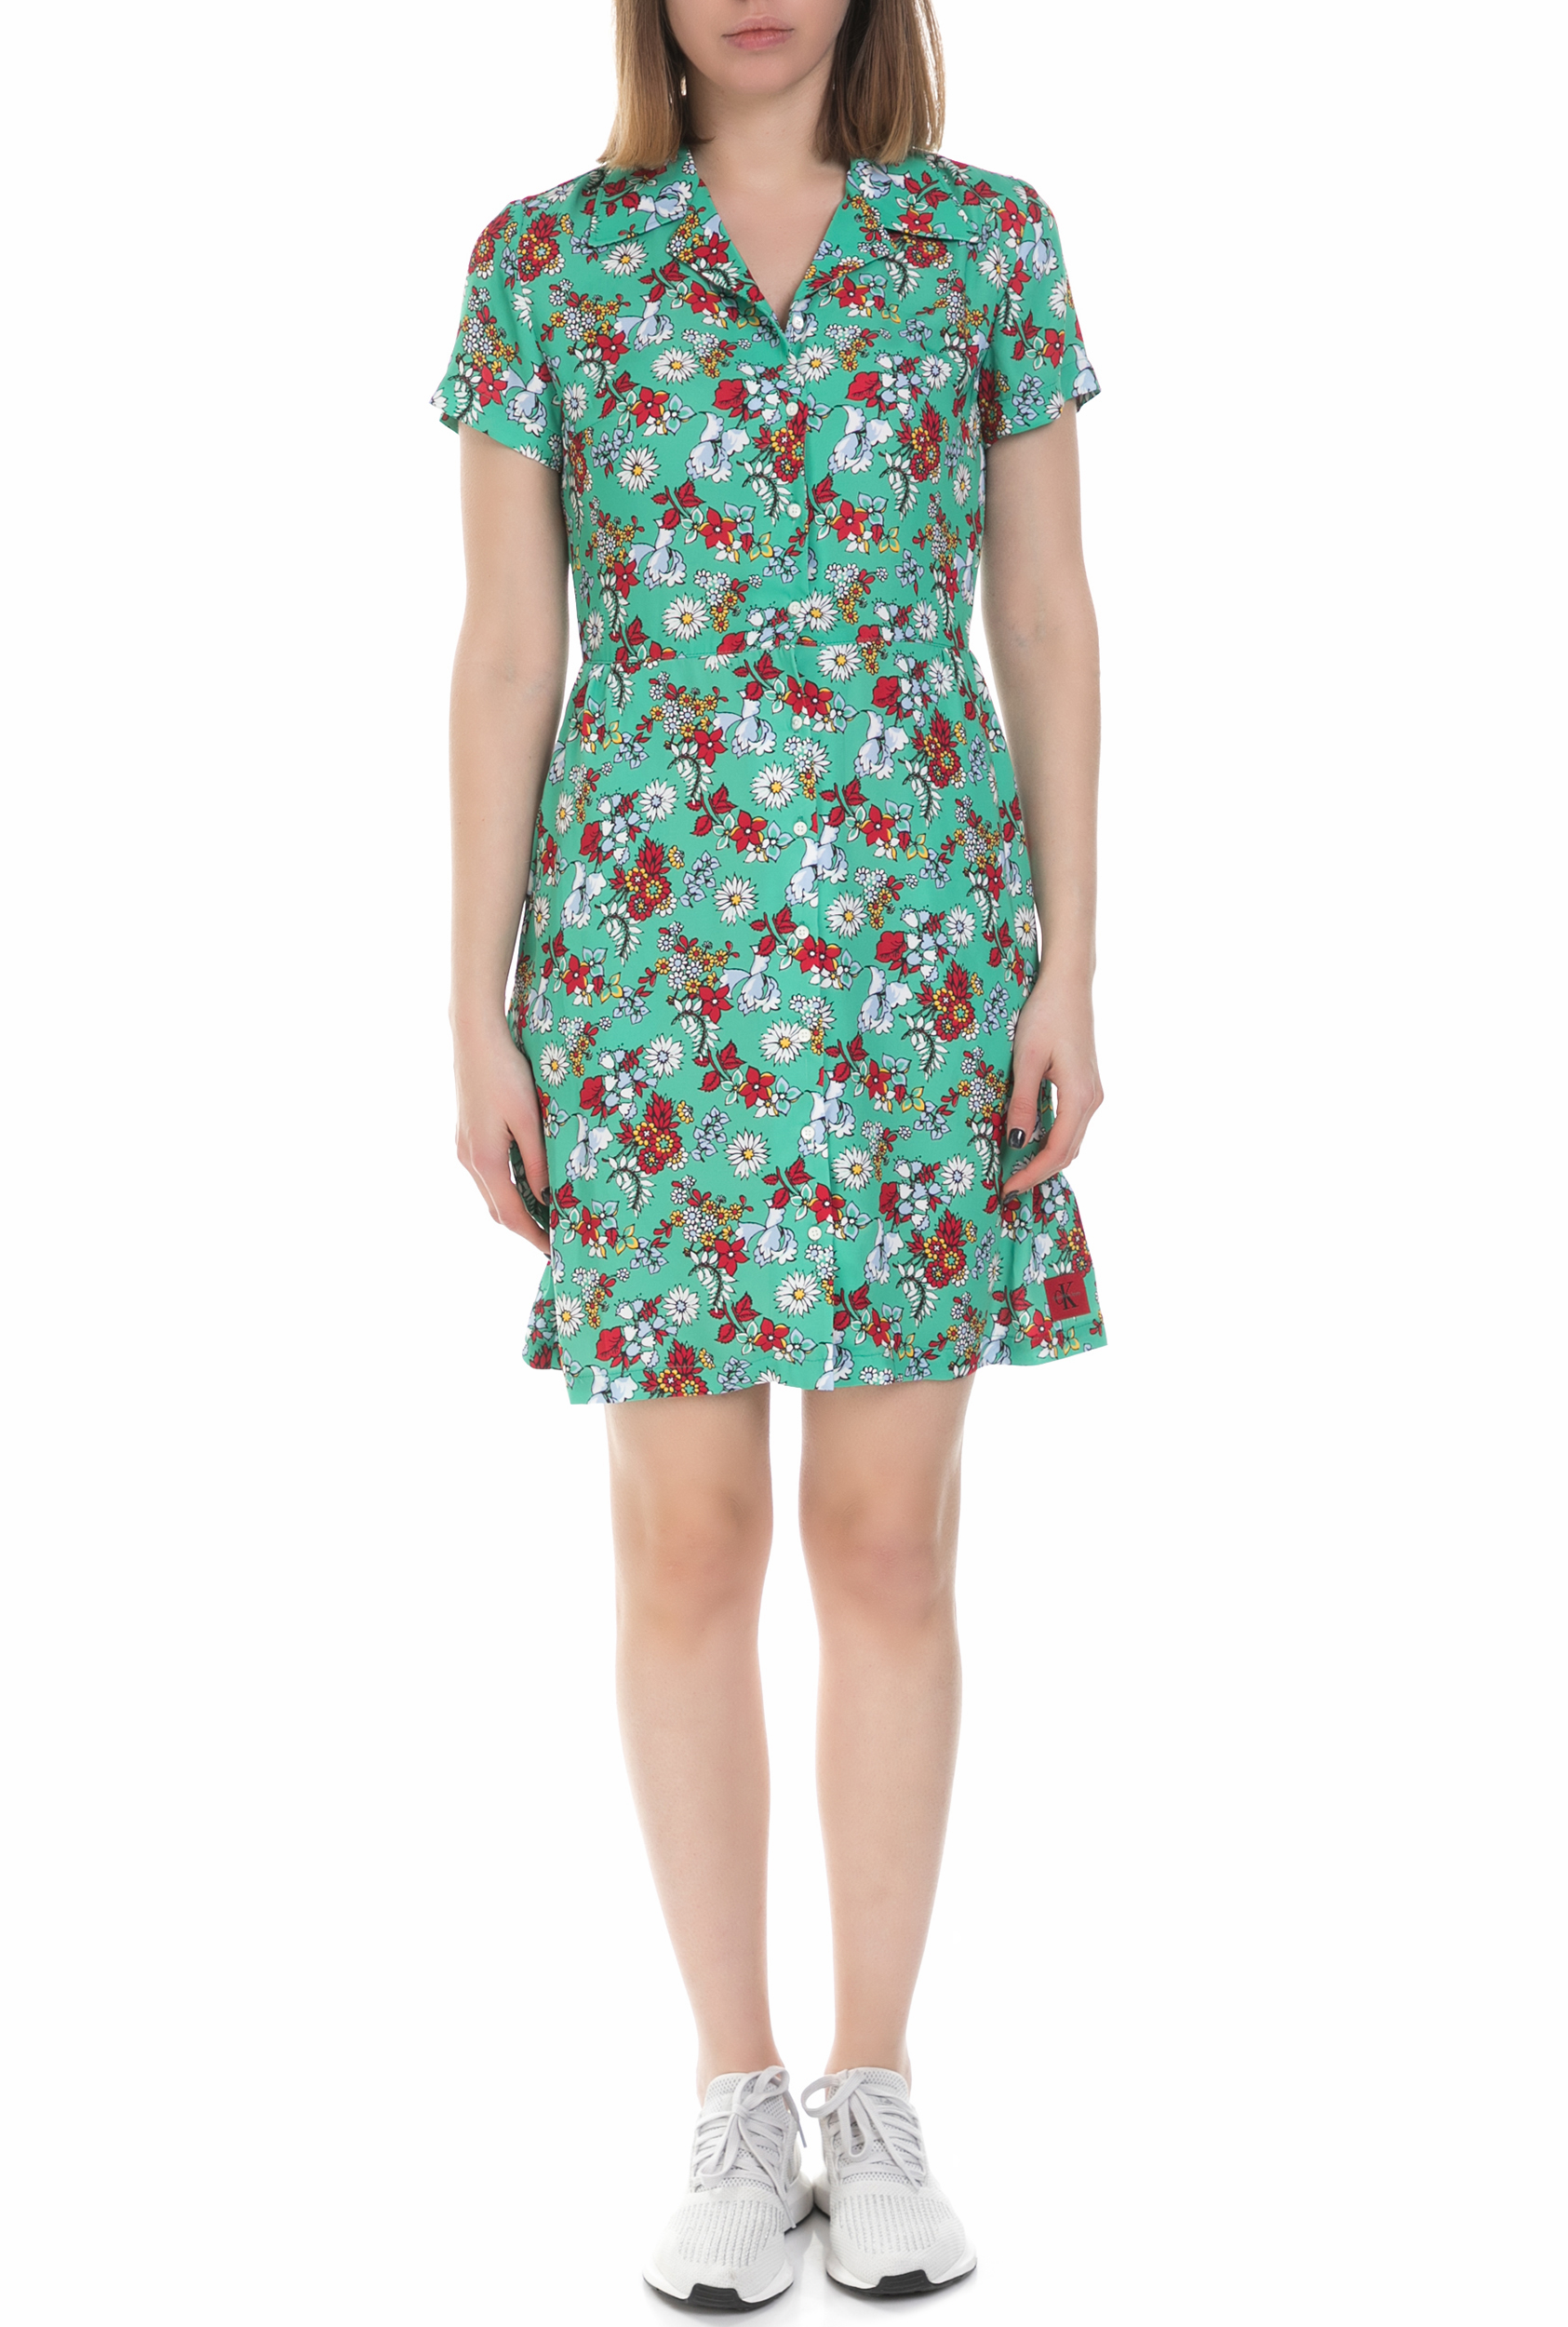 CALVIN KLEIN JEANS – Γυναικείο mini φόρεμα Calvin Klein Jeans πράσινο 1613049.0-0161